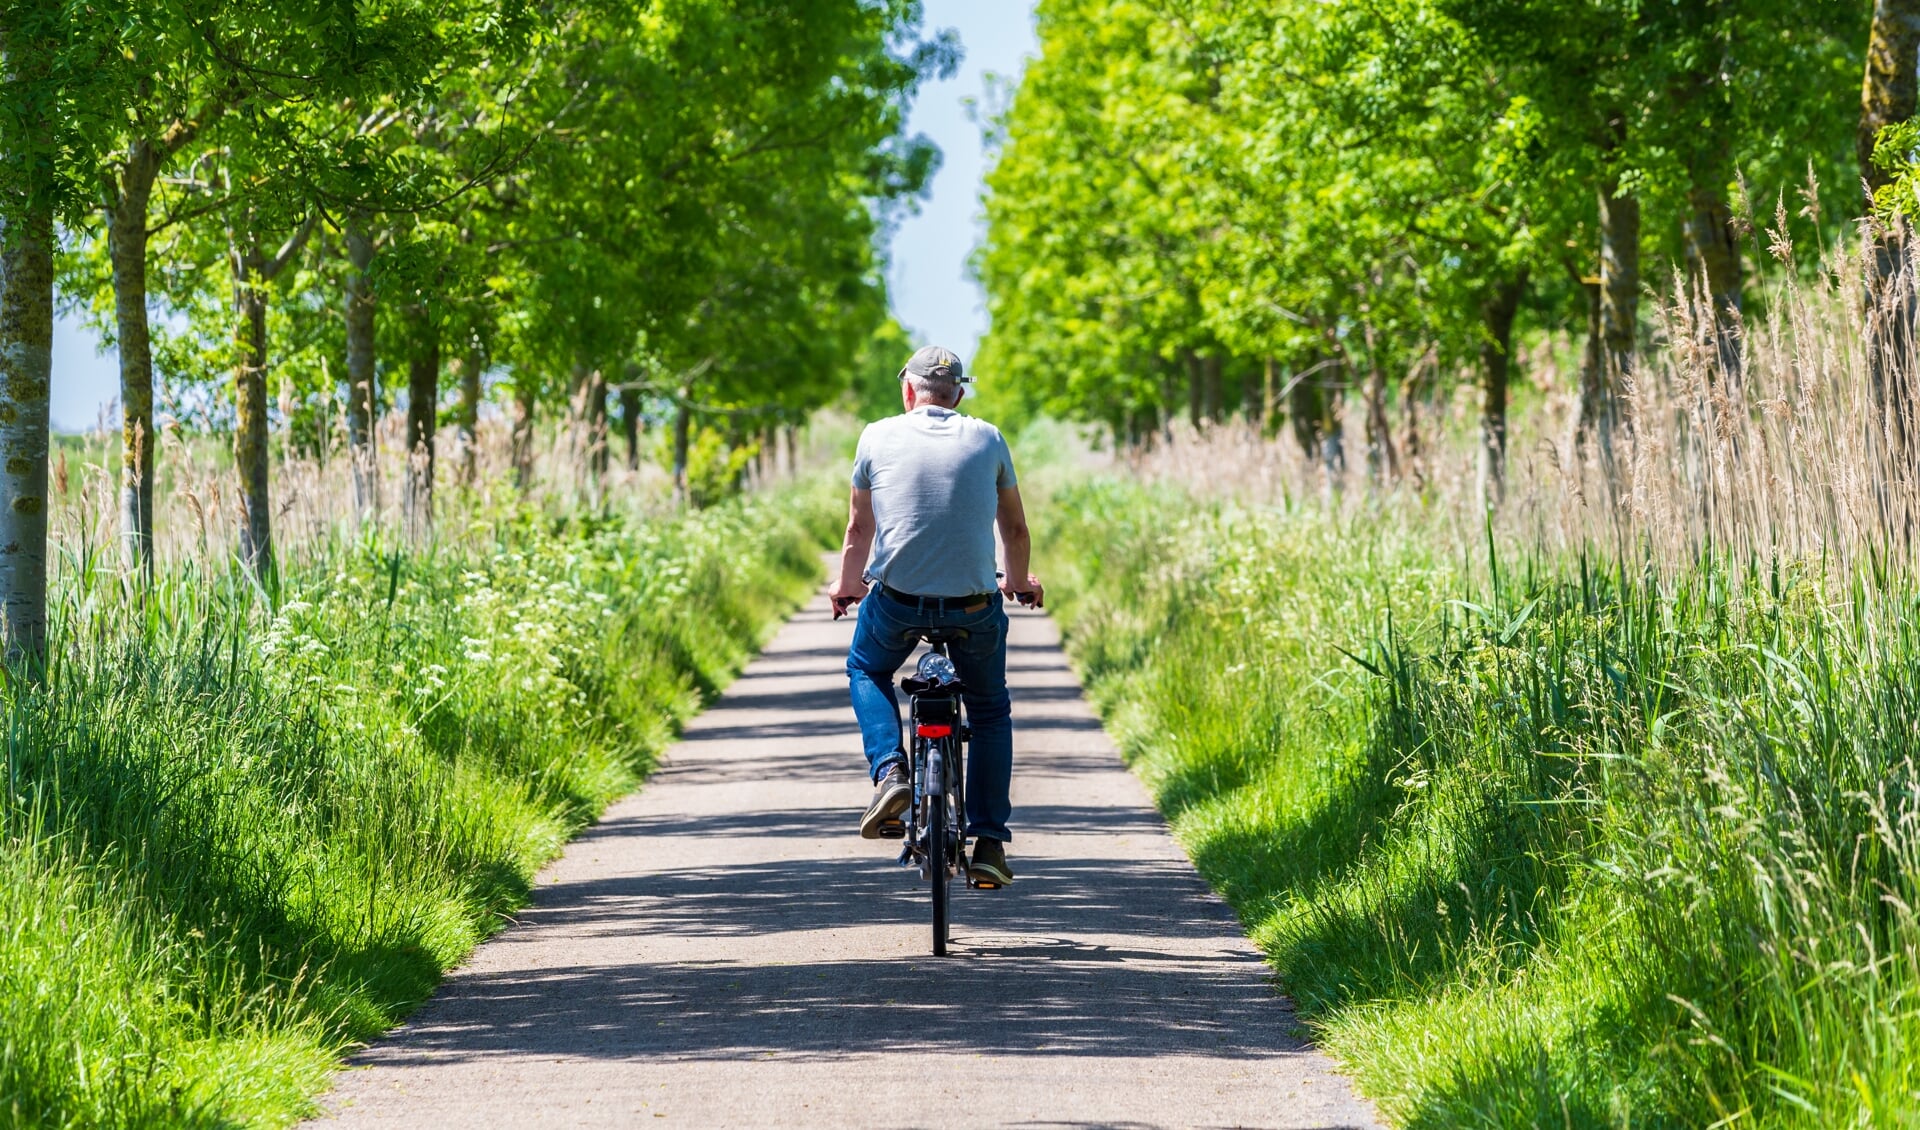 Het doel van het programma 'Doortrappen' is ouderen veiliger en zekerder te laten fietsen.